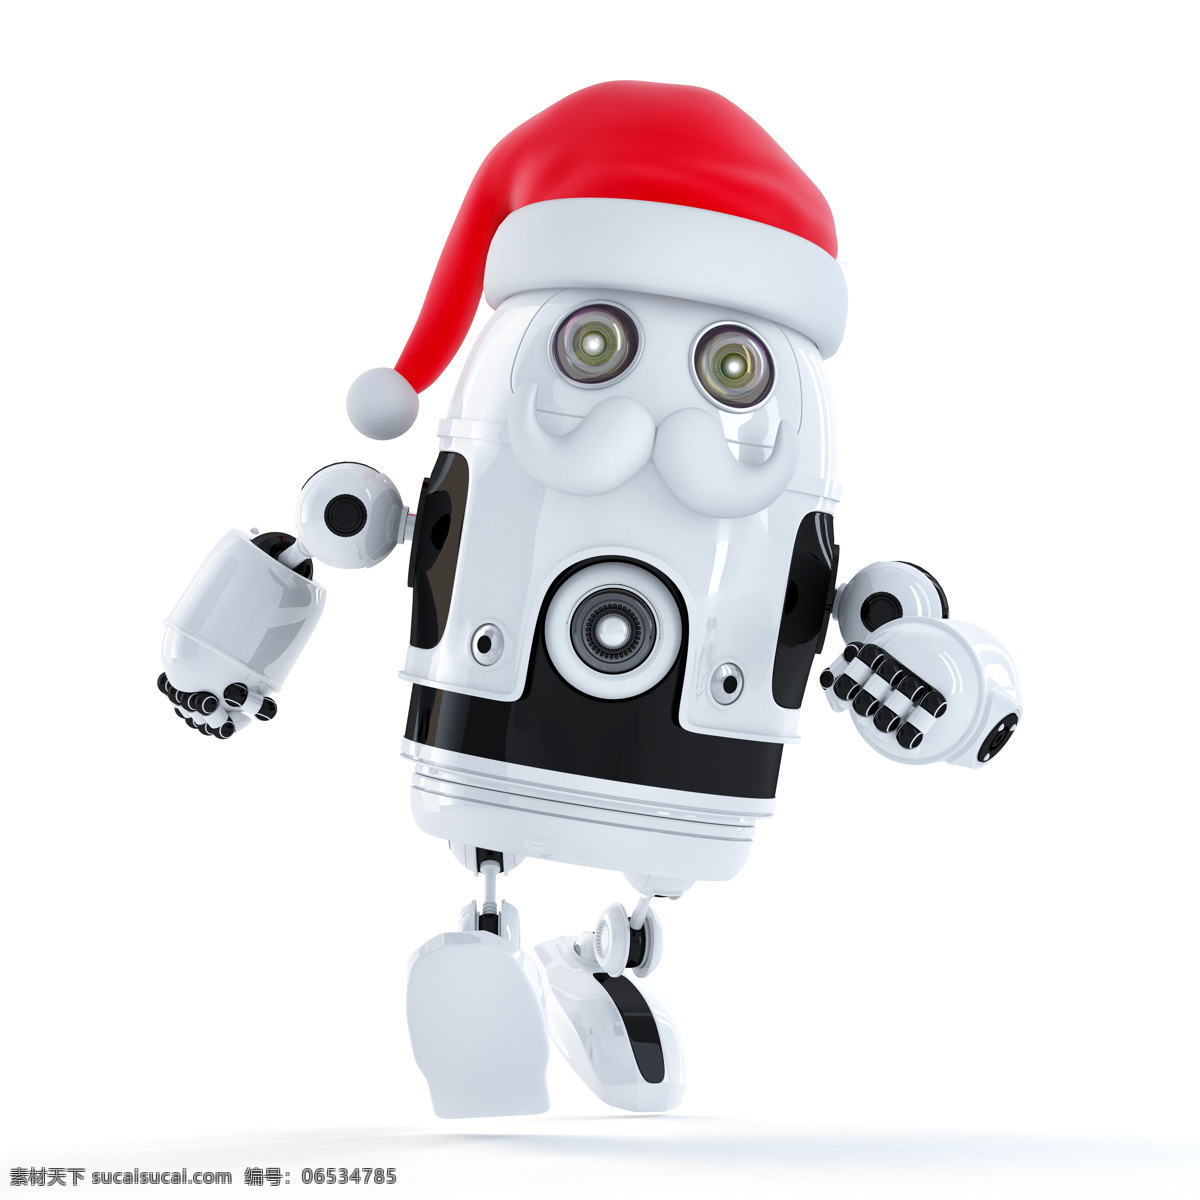 戴帽子 机器人 圣诞帽 圣诞节 节日素材 圣诞主题 节日庆典 生活百科 白色